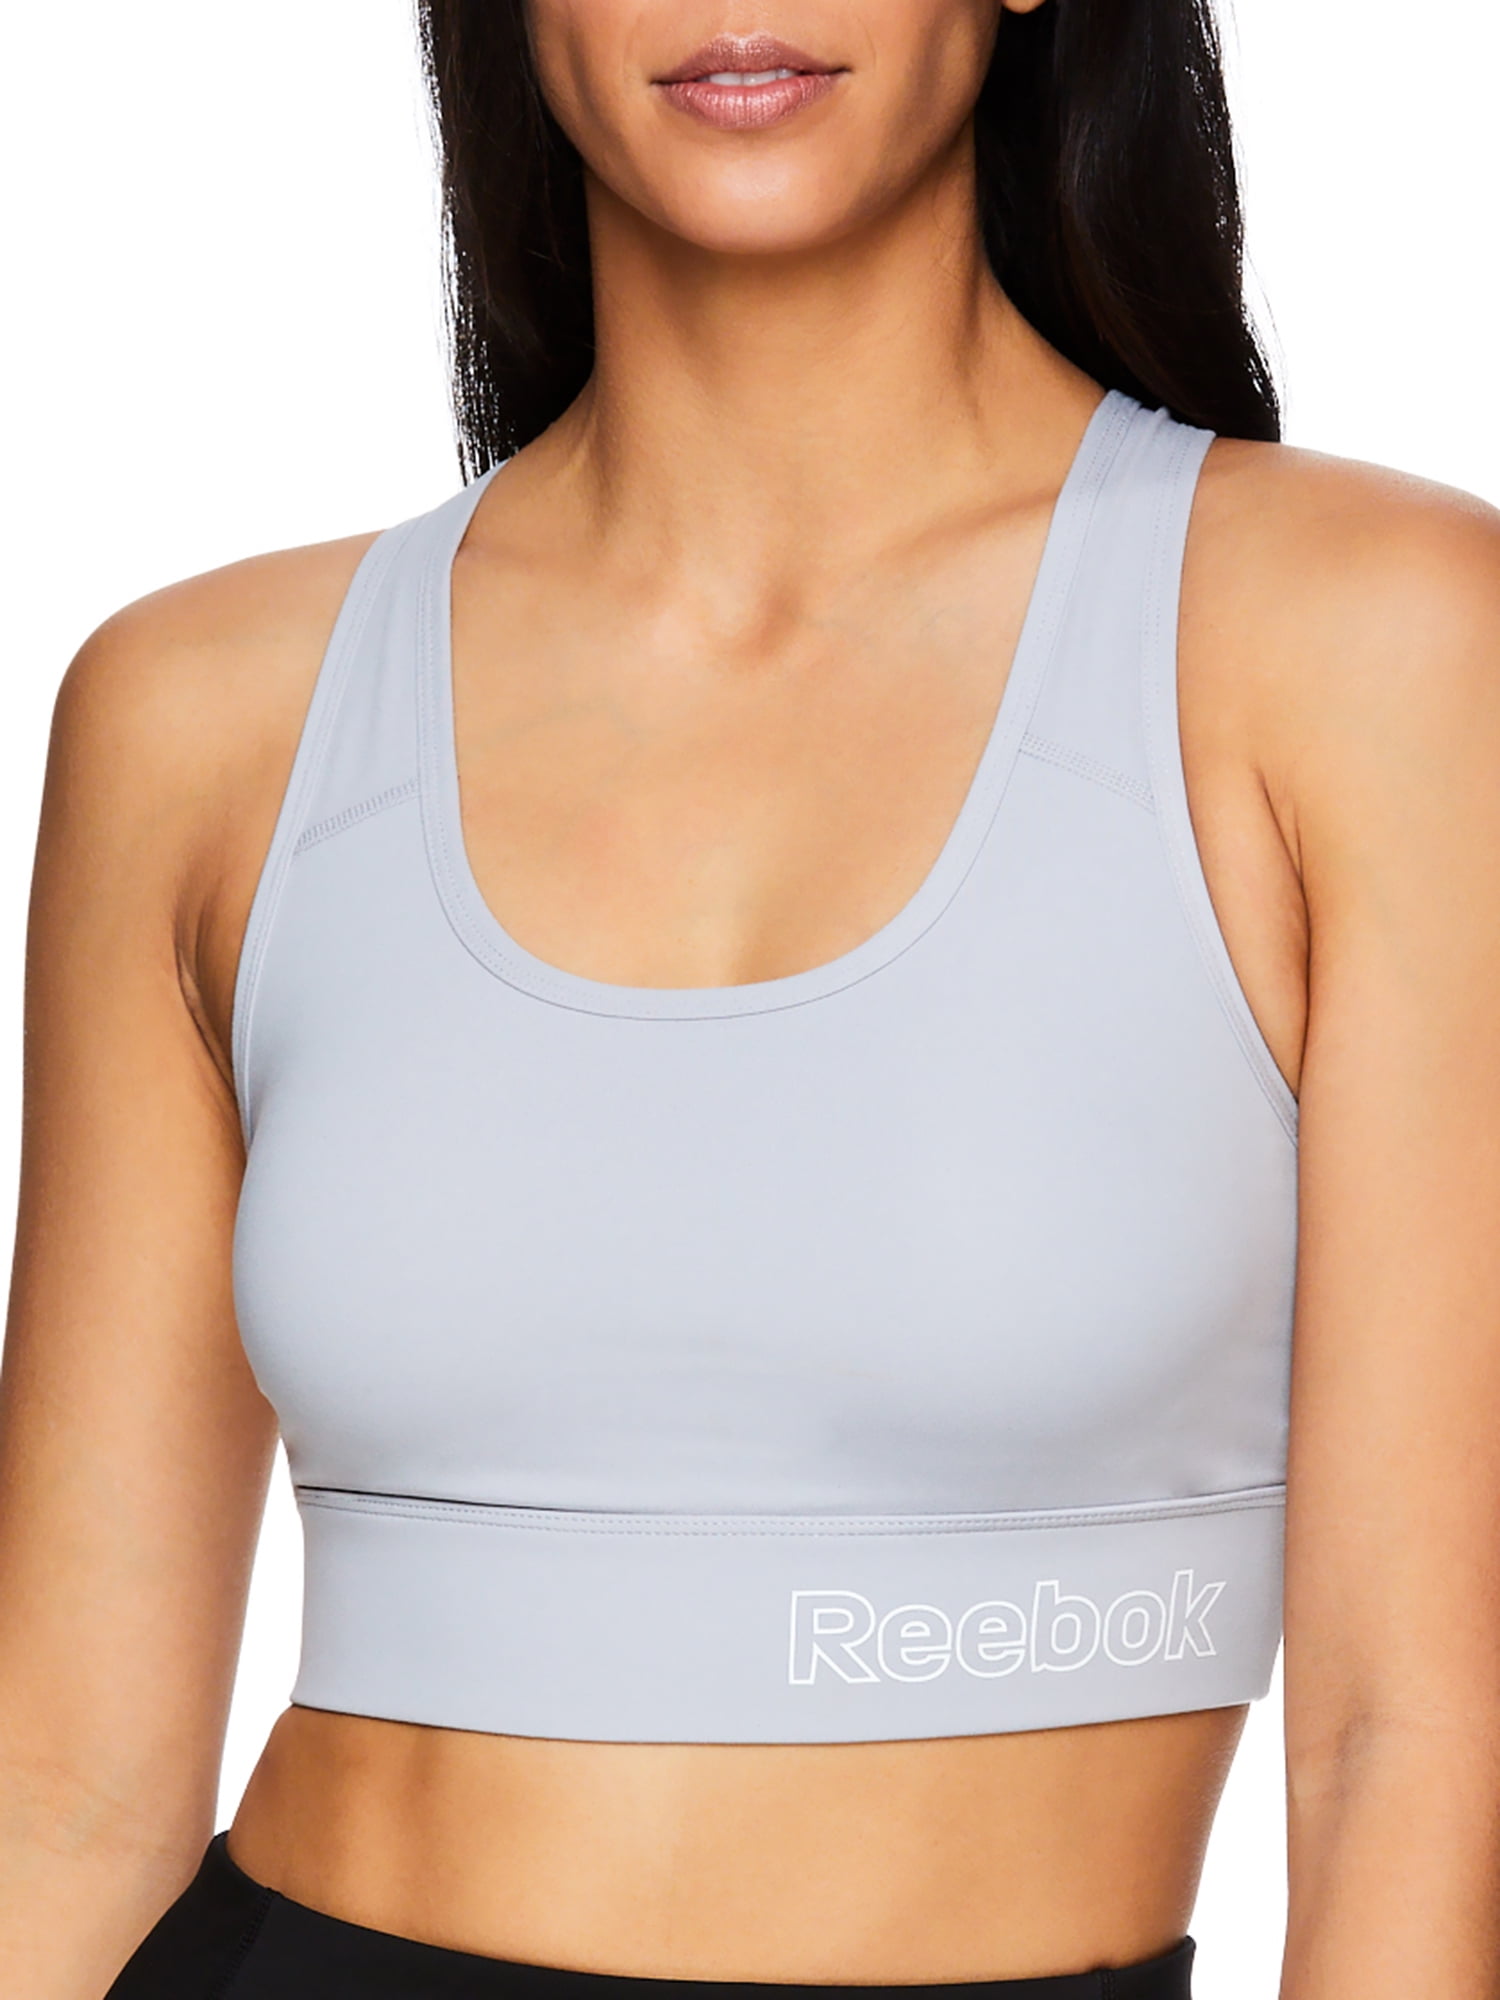 Reebok sports wear bra XL, Women's Fashion, Activewear on Carousell